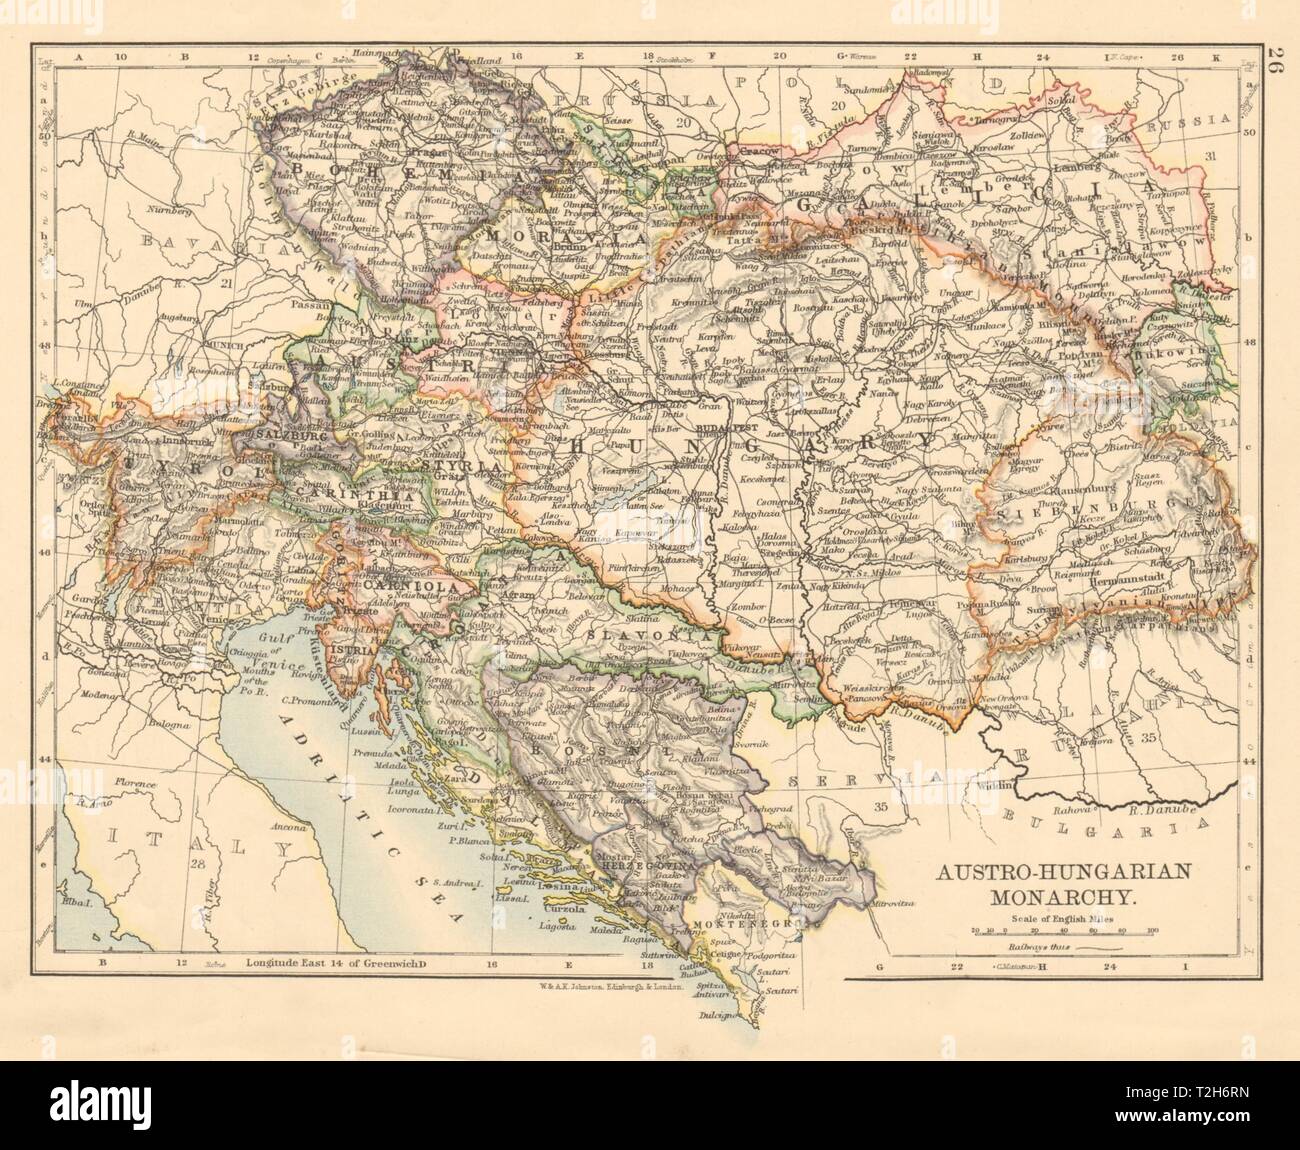 UNGARN Galizien Bukowina Siebenbürgen LANDKARTE von 1906 Karpaten Slavonien 